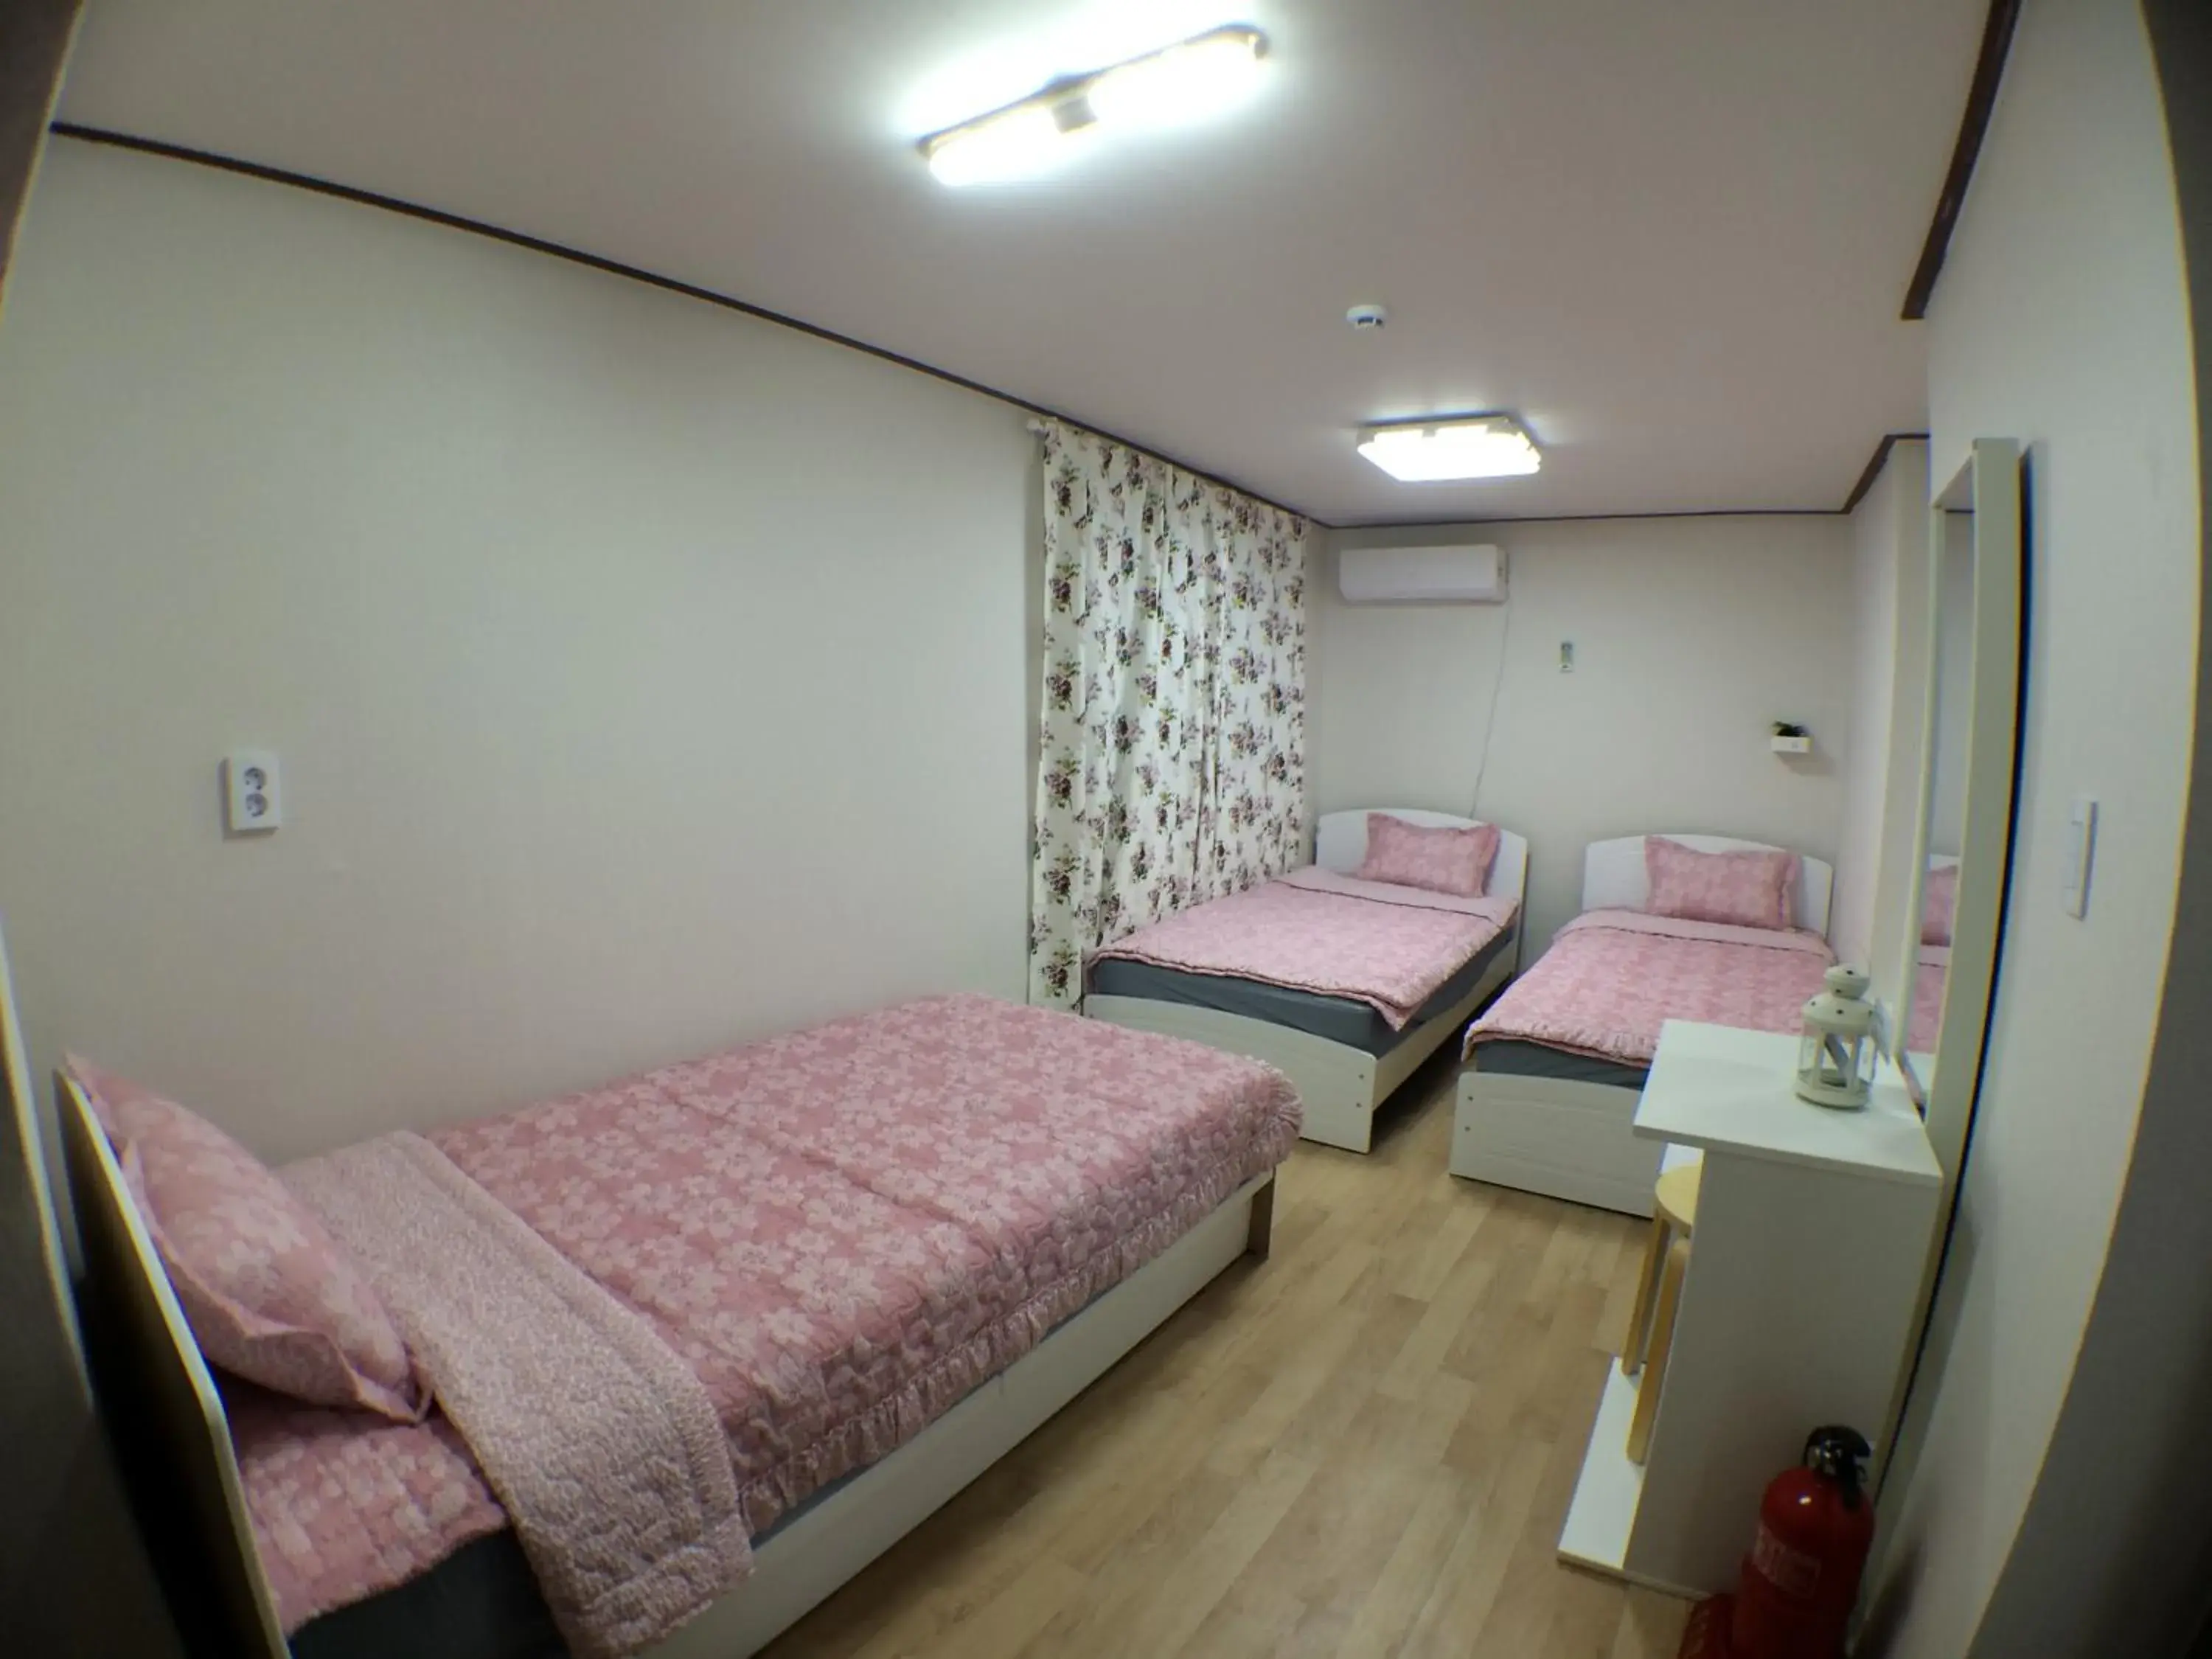 Bedroom, Room Photo in Jeong House Hongdae